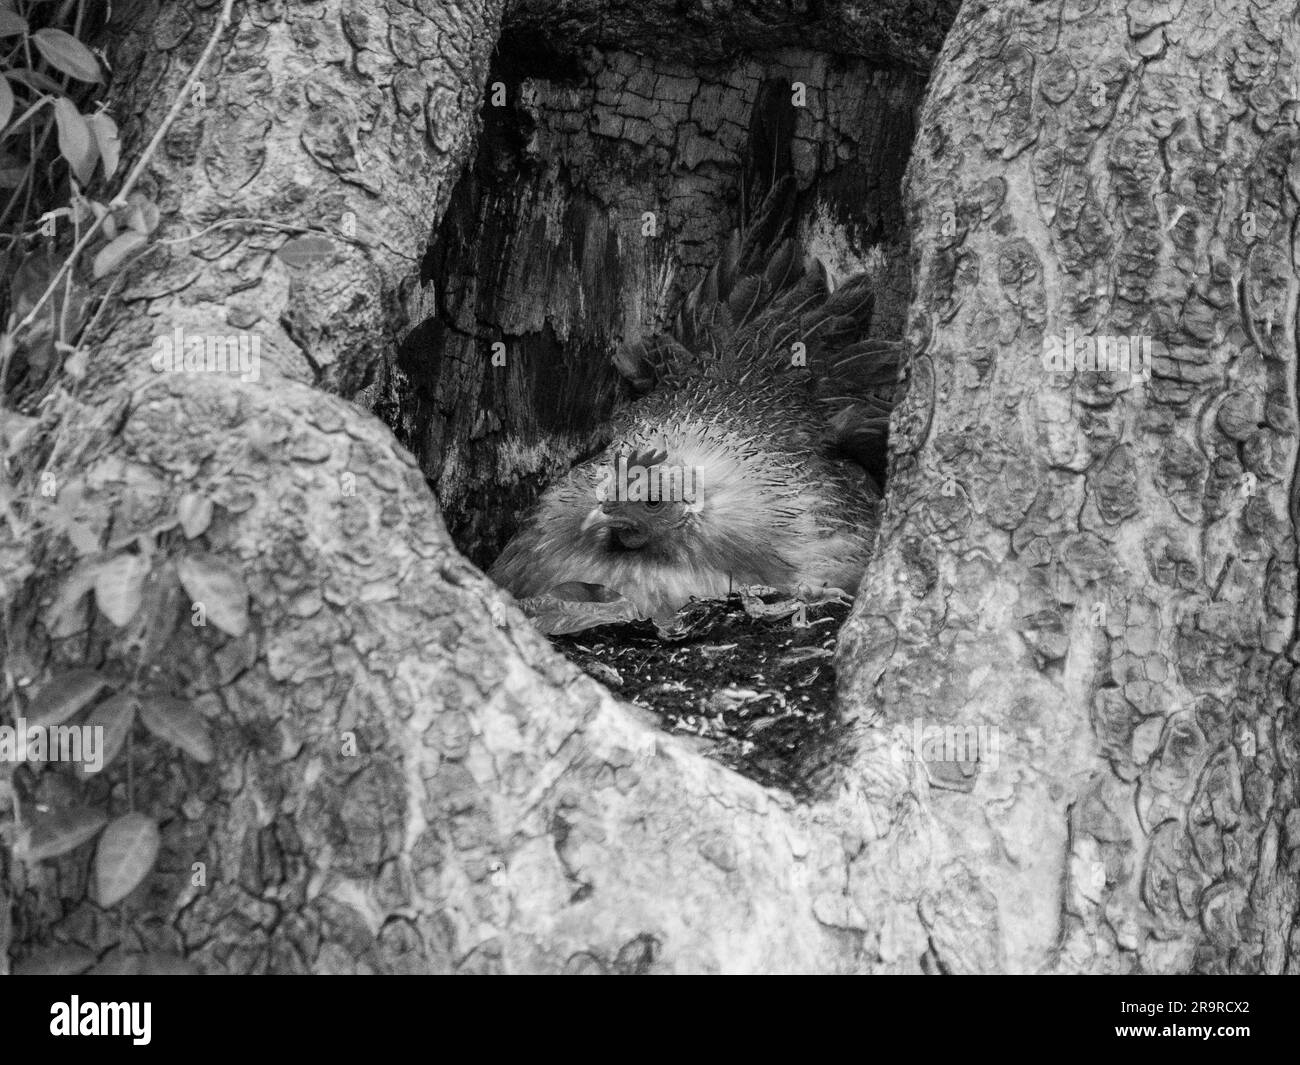 Une poule prend sa résidence dans un tronc d'arbre creux afin de protéger ses œufs contre tout dommage Banque D'Images